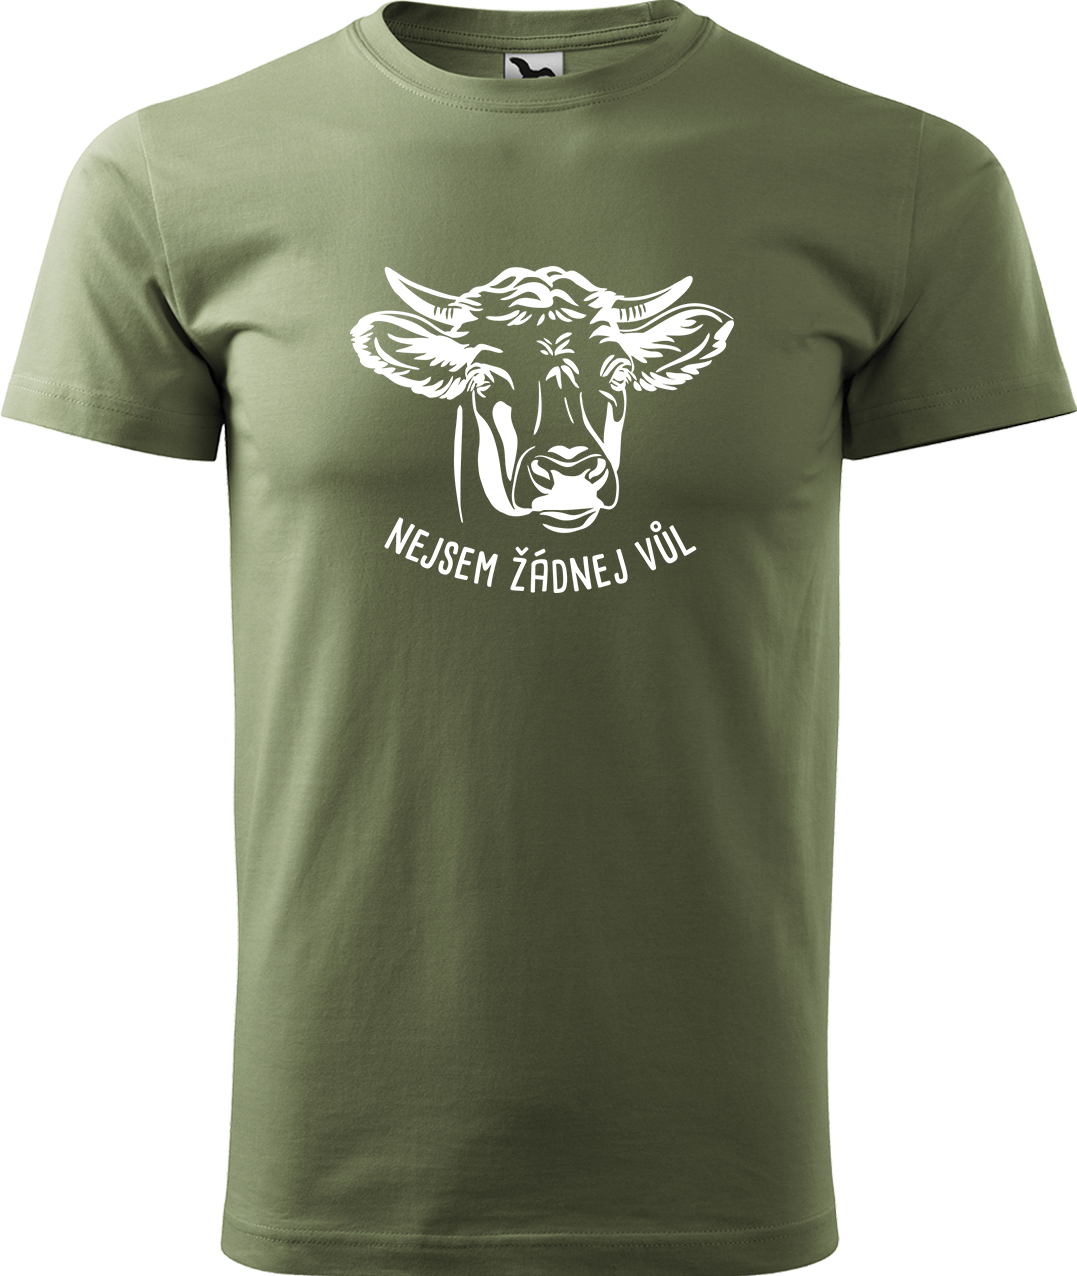 Pánské tričko s krávou - Nejsem žádnej vůl Velikost: 4XL, Barva: Světlá khaki (28), Střih: pánský